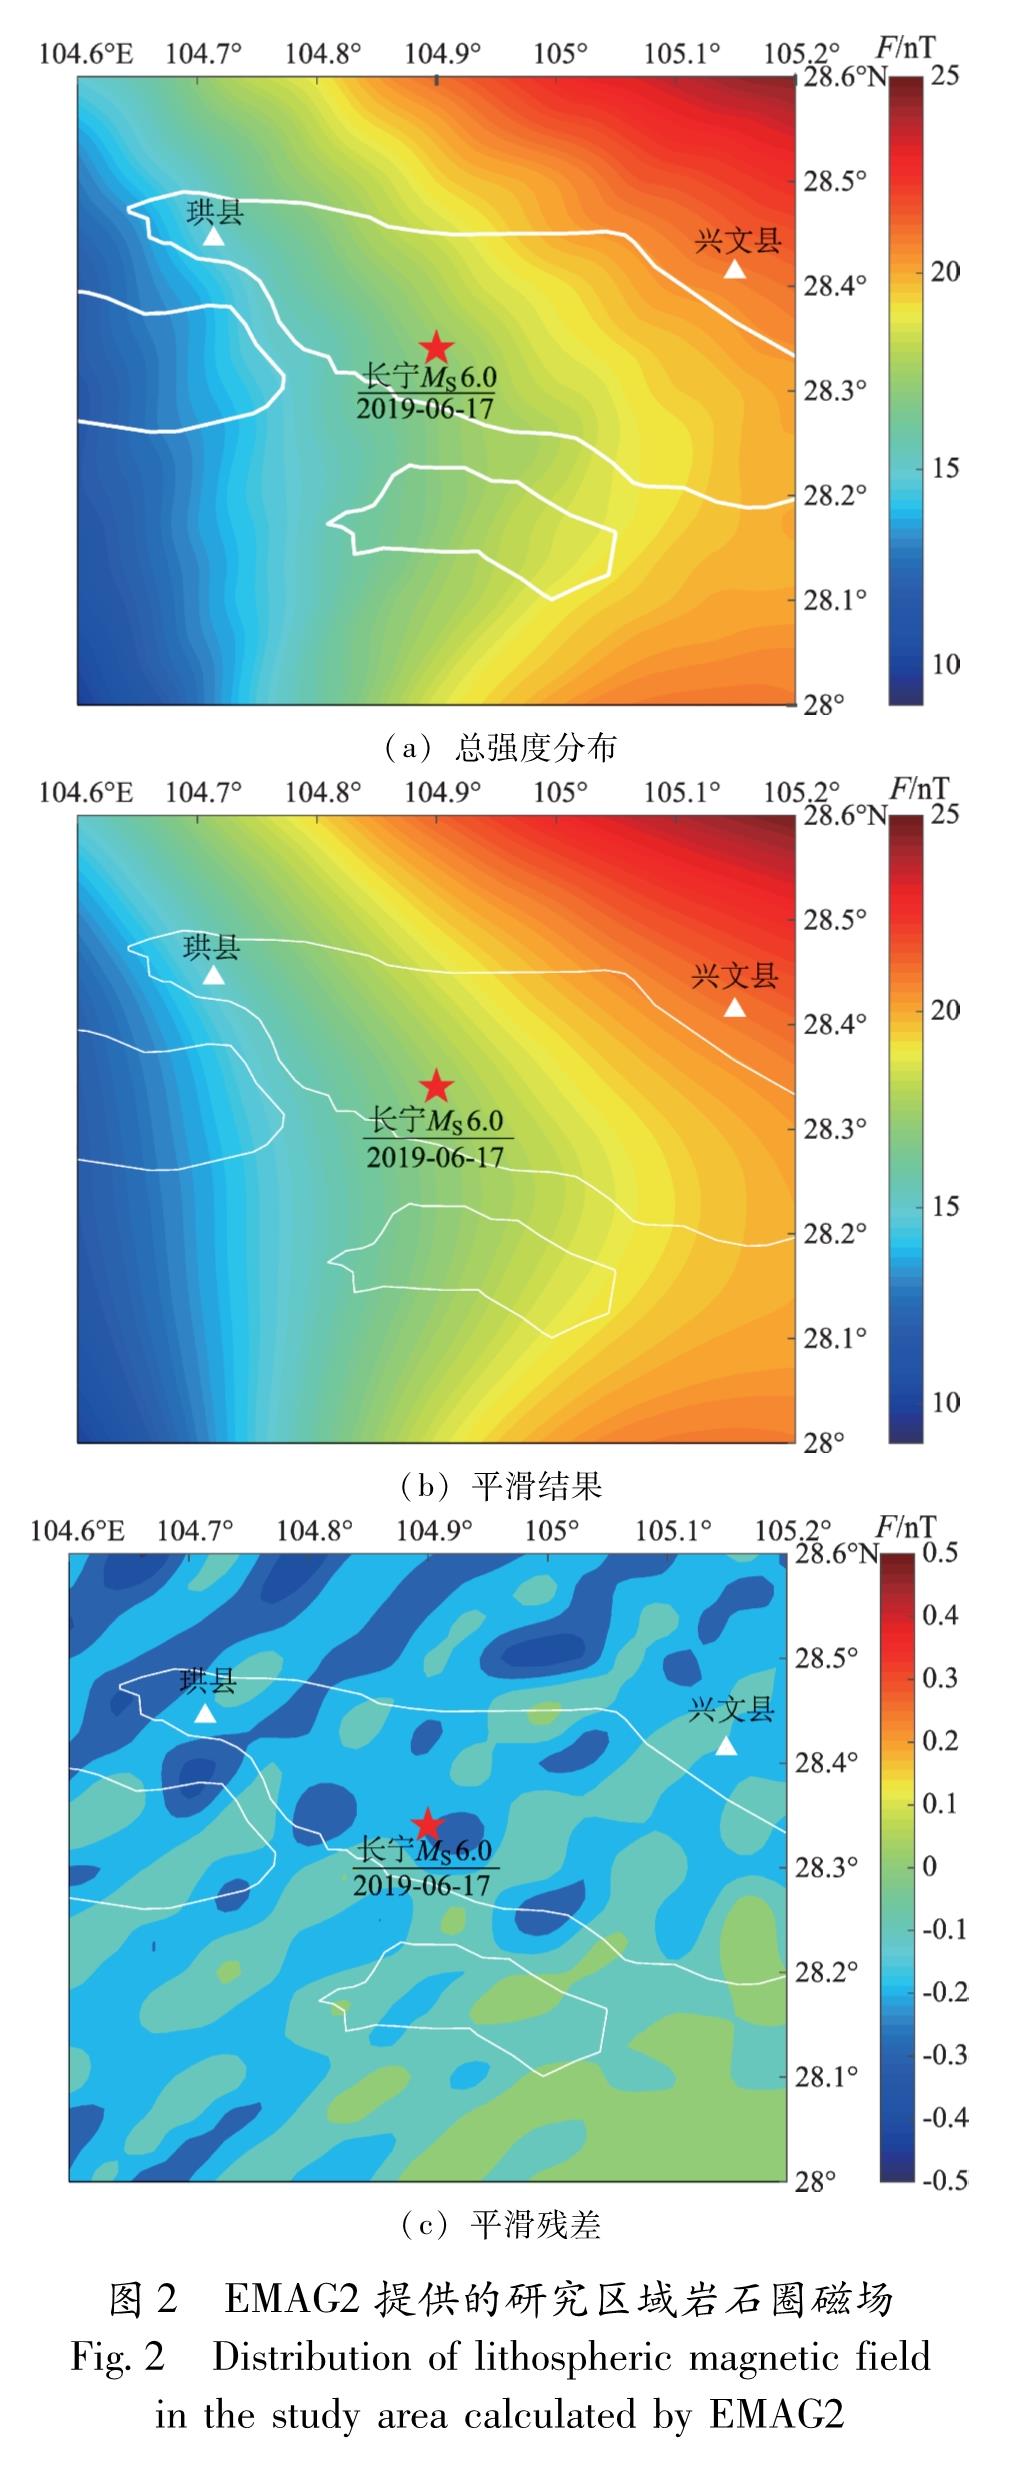 图2 EMAG2提供的研究区域岩石圈磁场<br/>Fig.2 Distribution of lithospheric magnetic field in the study area calculated by EMAG2